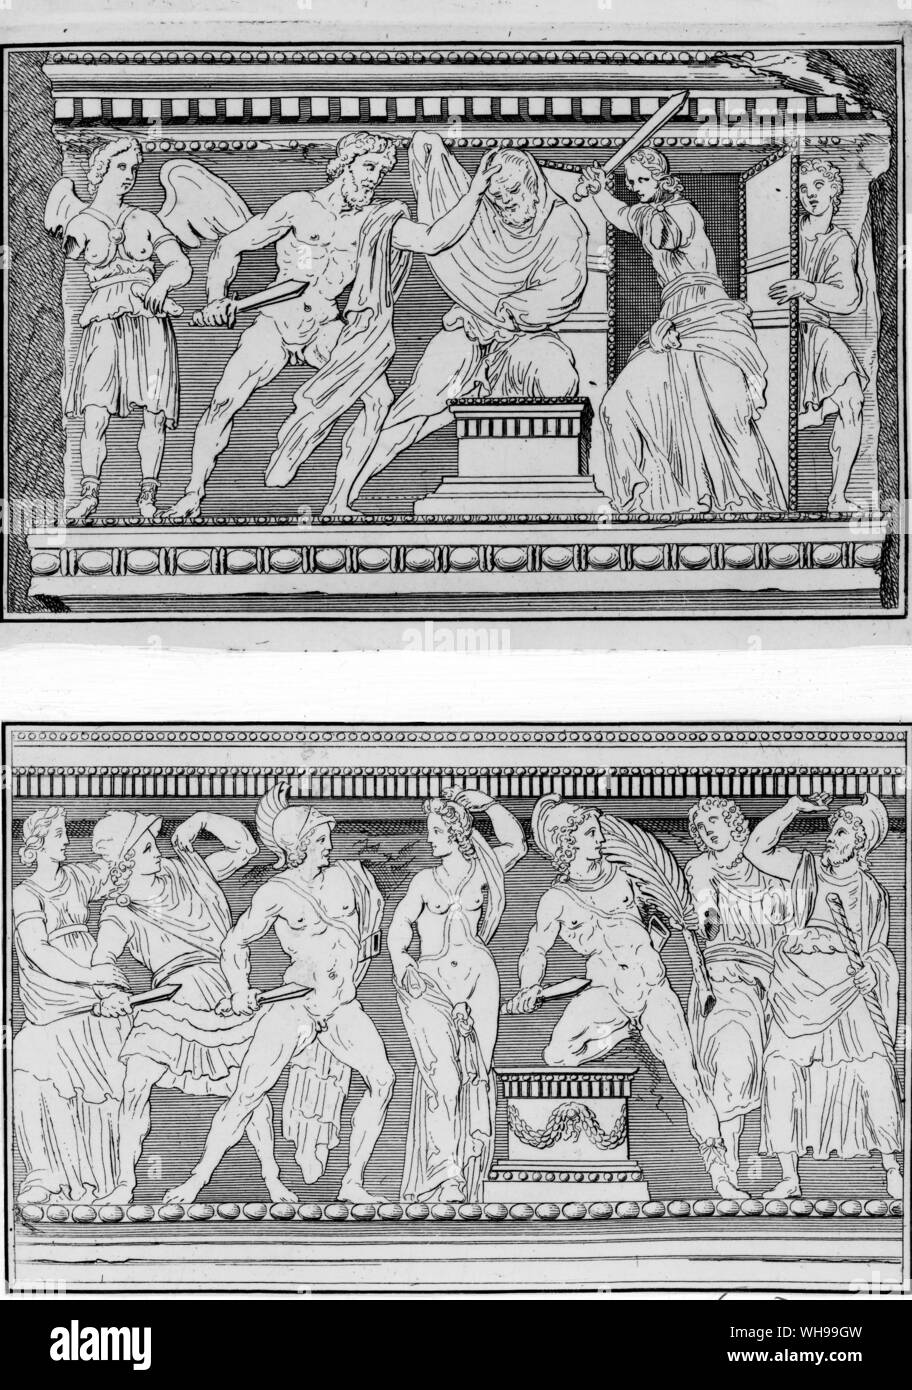 Abbildung aus dem Dempster De Etrurien zeigen Episoden aus der griechischen Mythologie geschnitzt auf den Seiten von einem marmornen Sarkophag Stockfoto